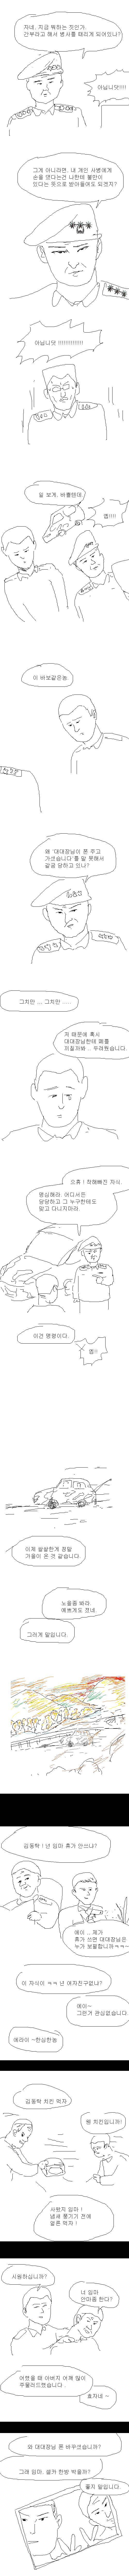 전역한 엉덩국 만화 | 인스티즈